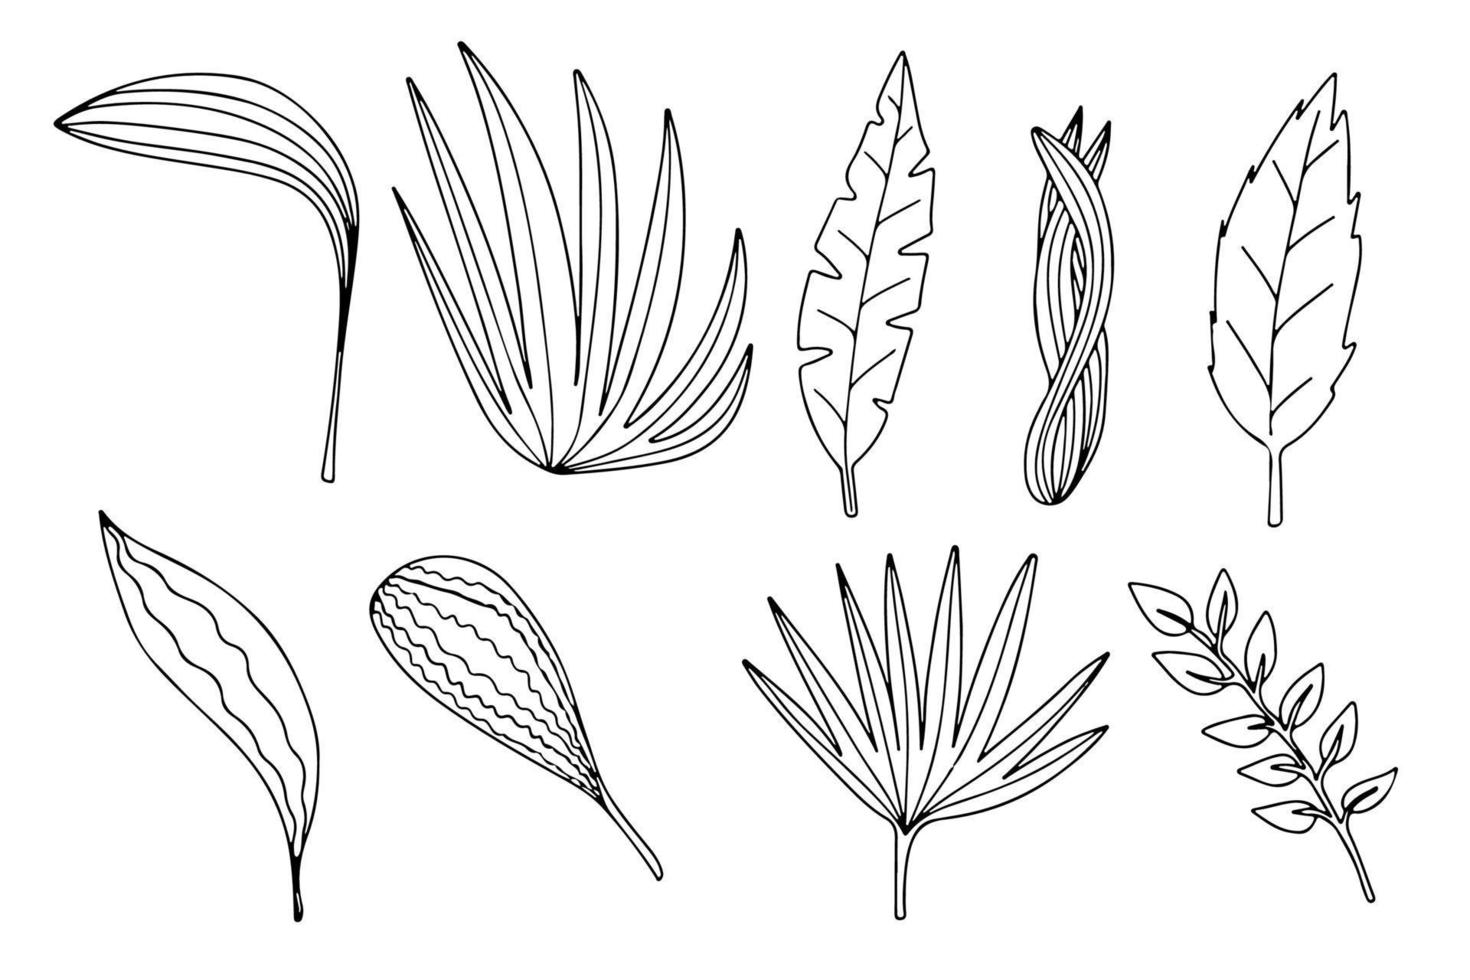 diferentes tipos de folhas isoladas no fundo branco. vetor folha de palmeira, monstera e outras ilustrações de plantas.